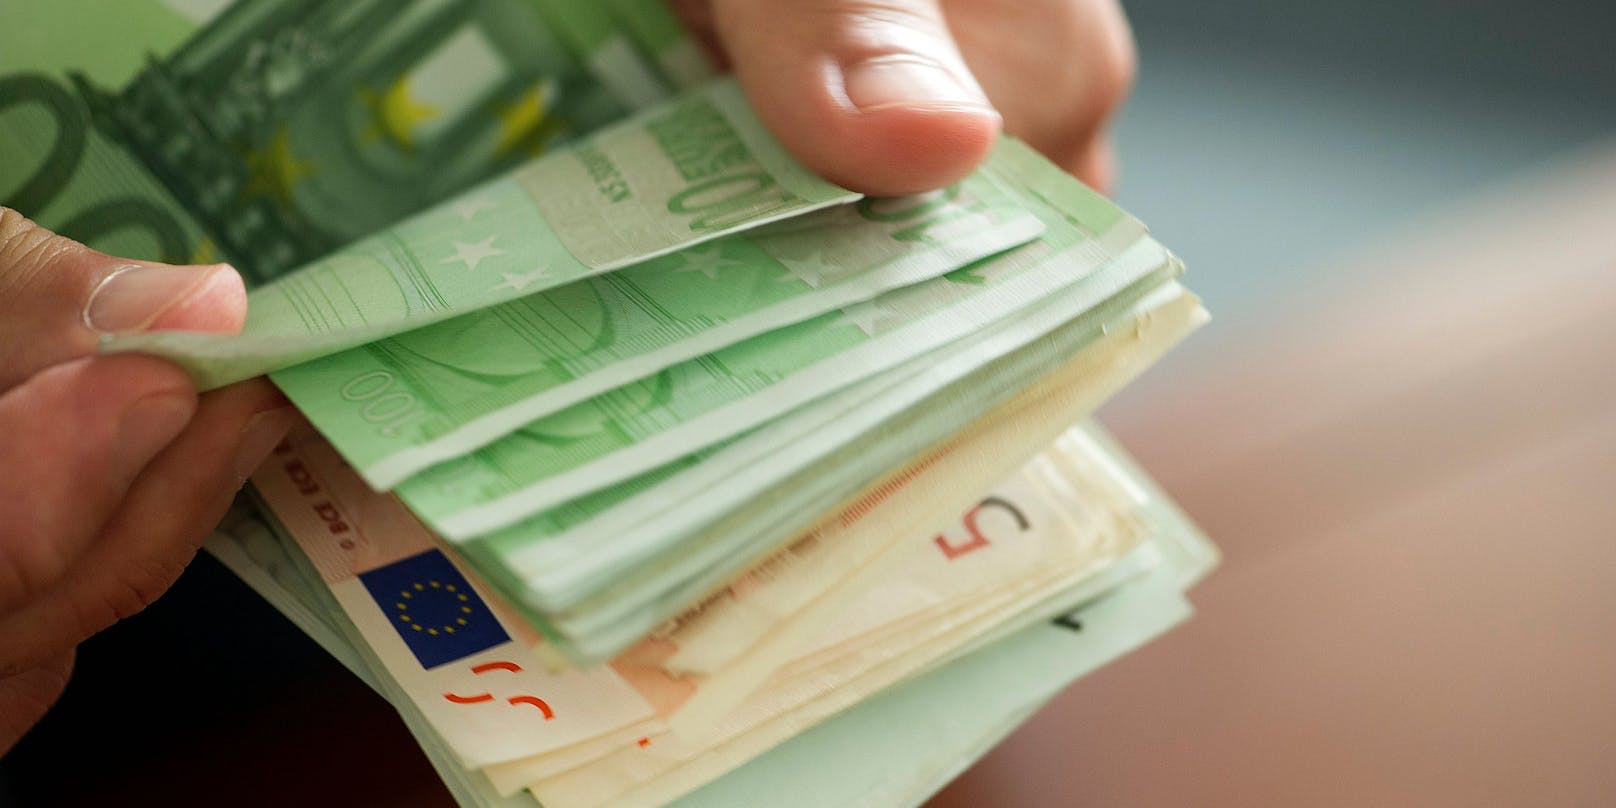 Die EU-Kommission will im Kampf gegen Geldwäsche künftig Barzahlungen über 10.000 Euro verbieten. (Symbolbild)